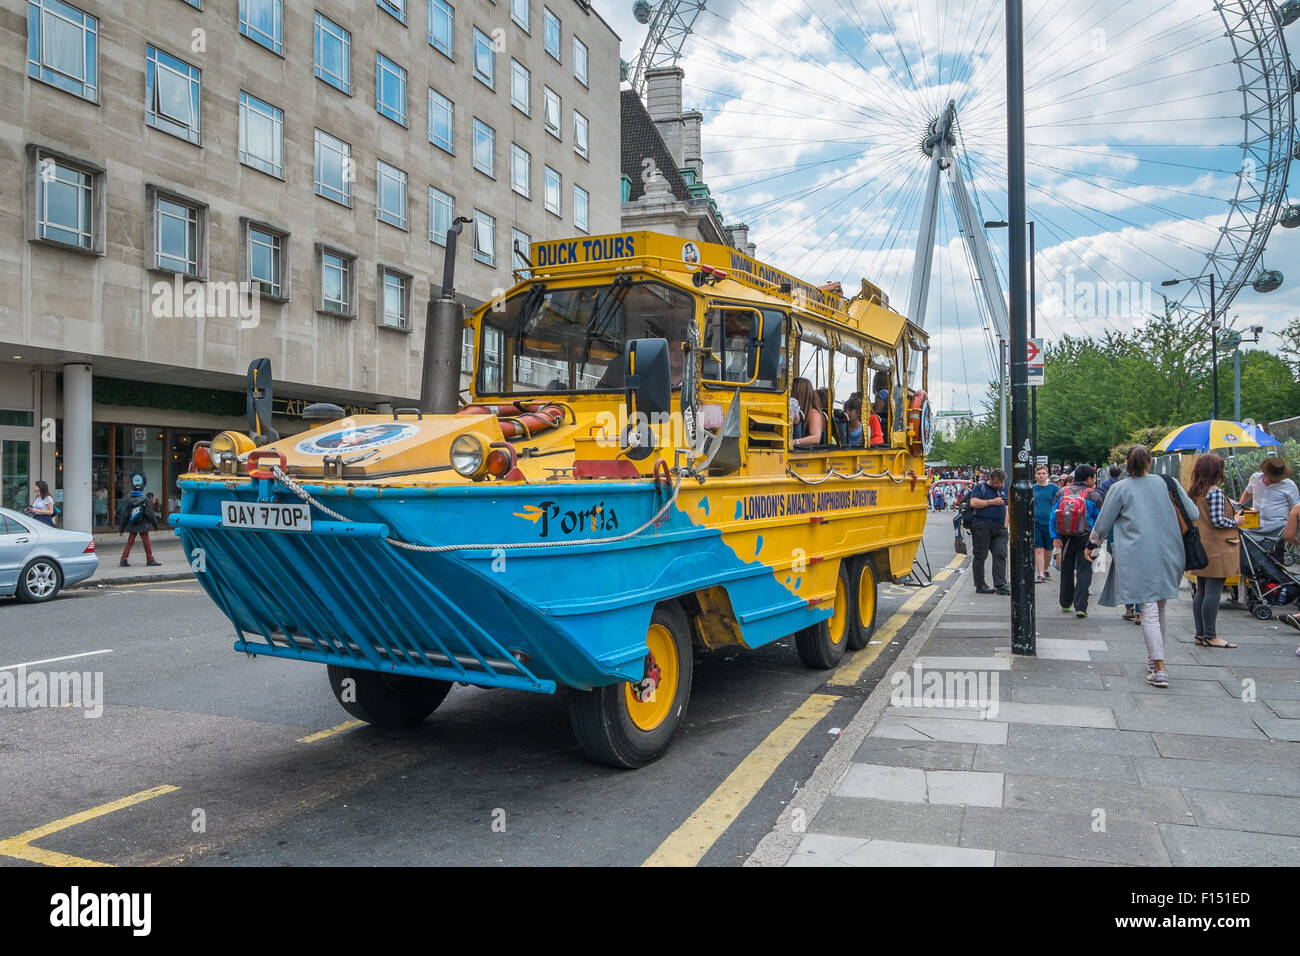 Londra, UK- Luglio 31, 2015: Un London Duck Tours sightseeing bus mostrato in parte anteriore del London Eye. London Duck Tours, usando la vecchia Foto Stock